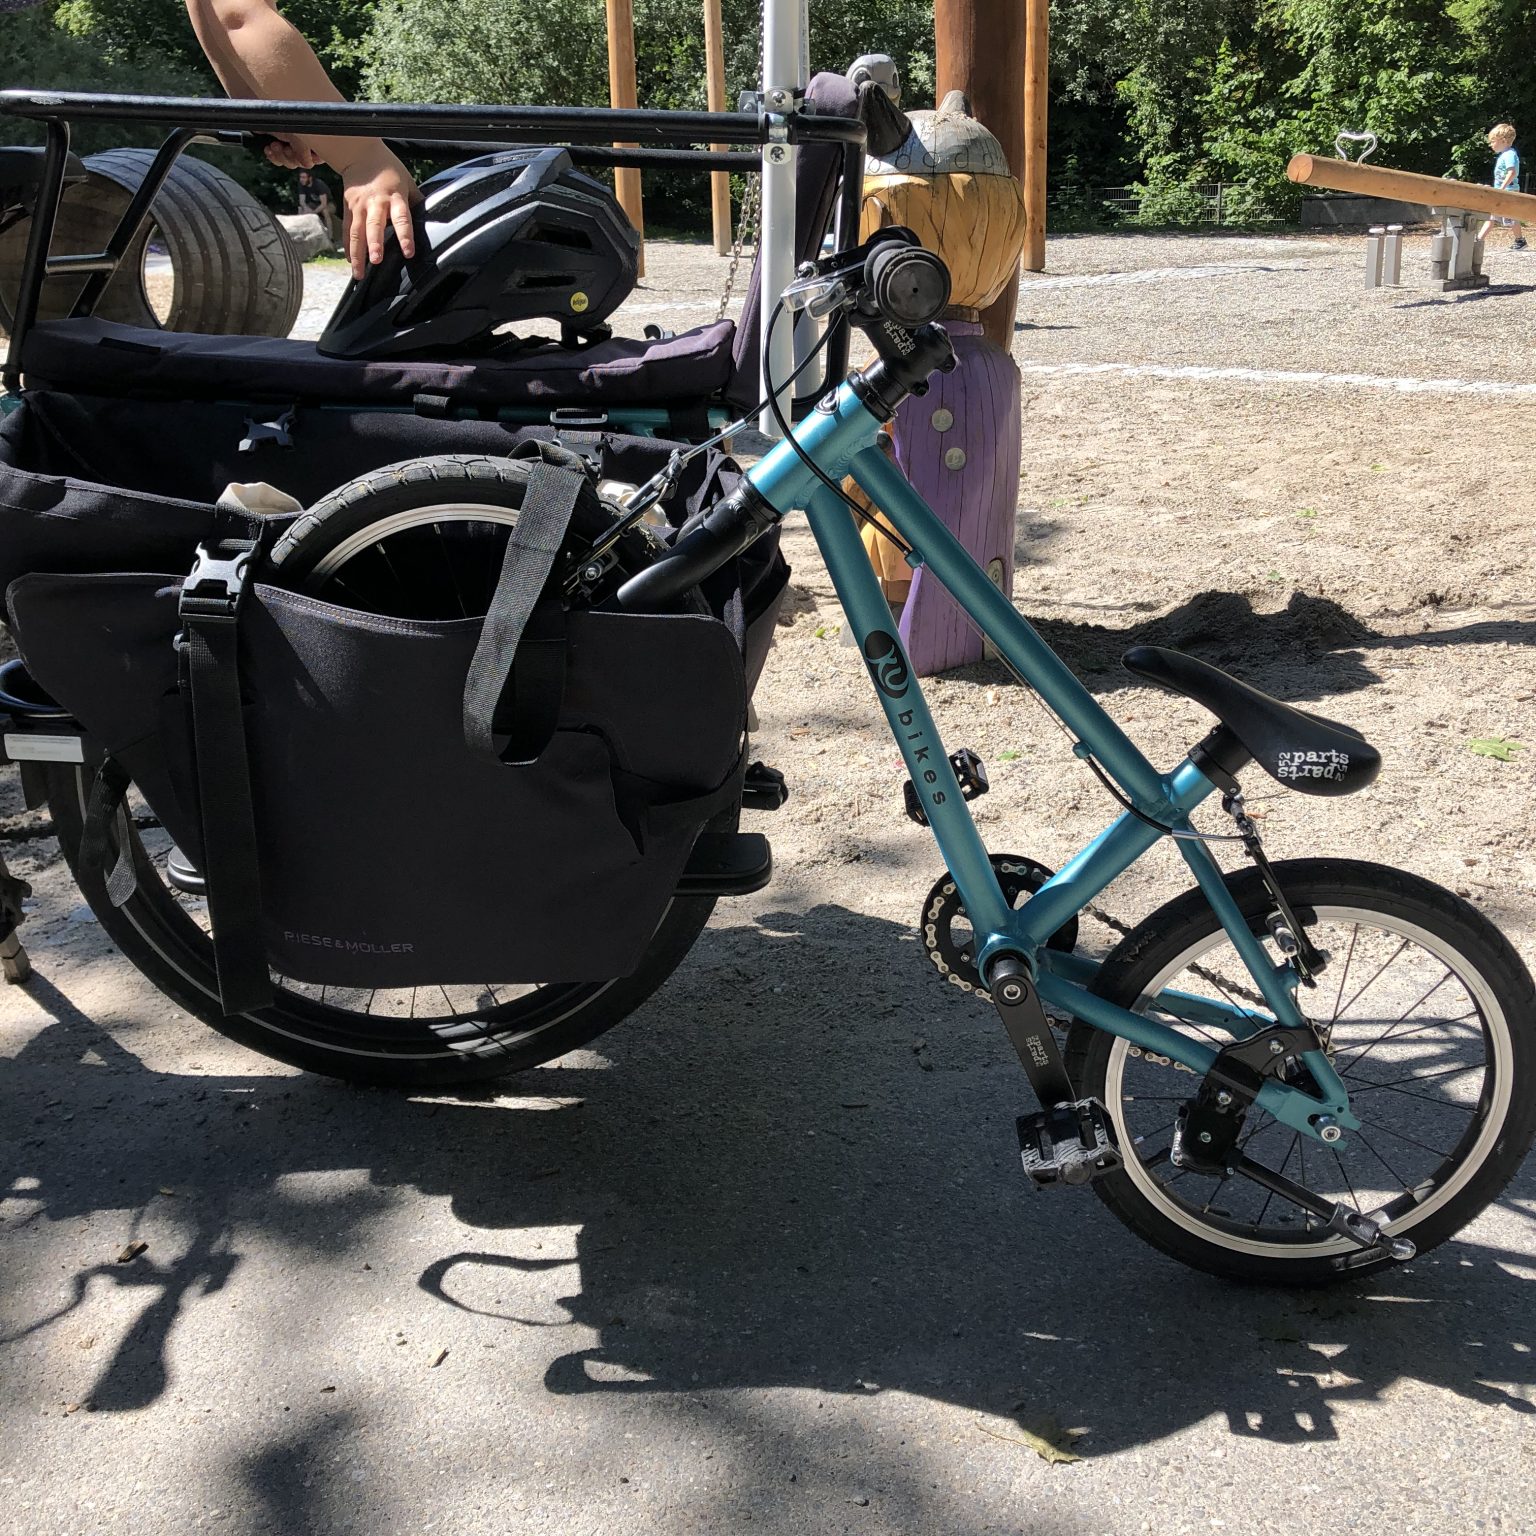 fahrrad-mit-den-cargobags-abschleppen-1536x1536.jpeg